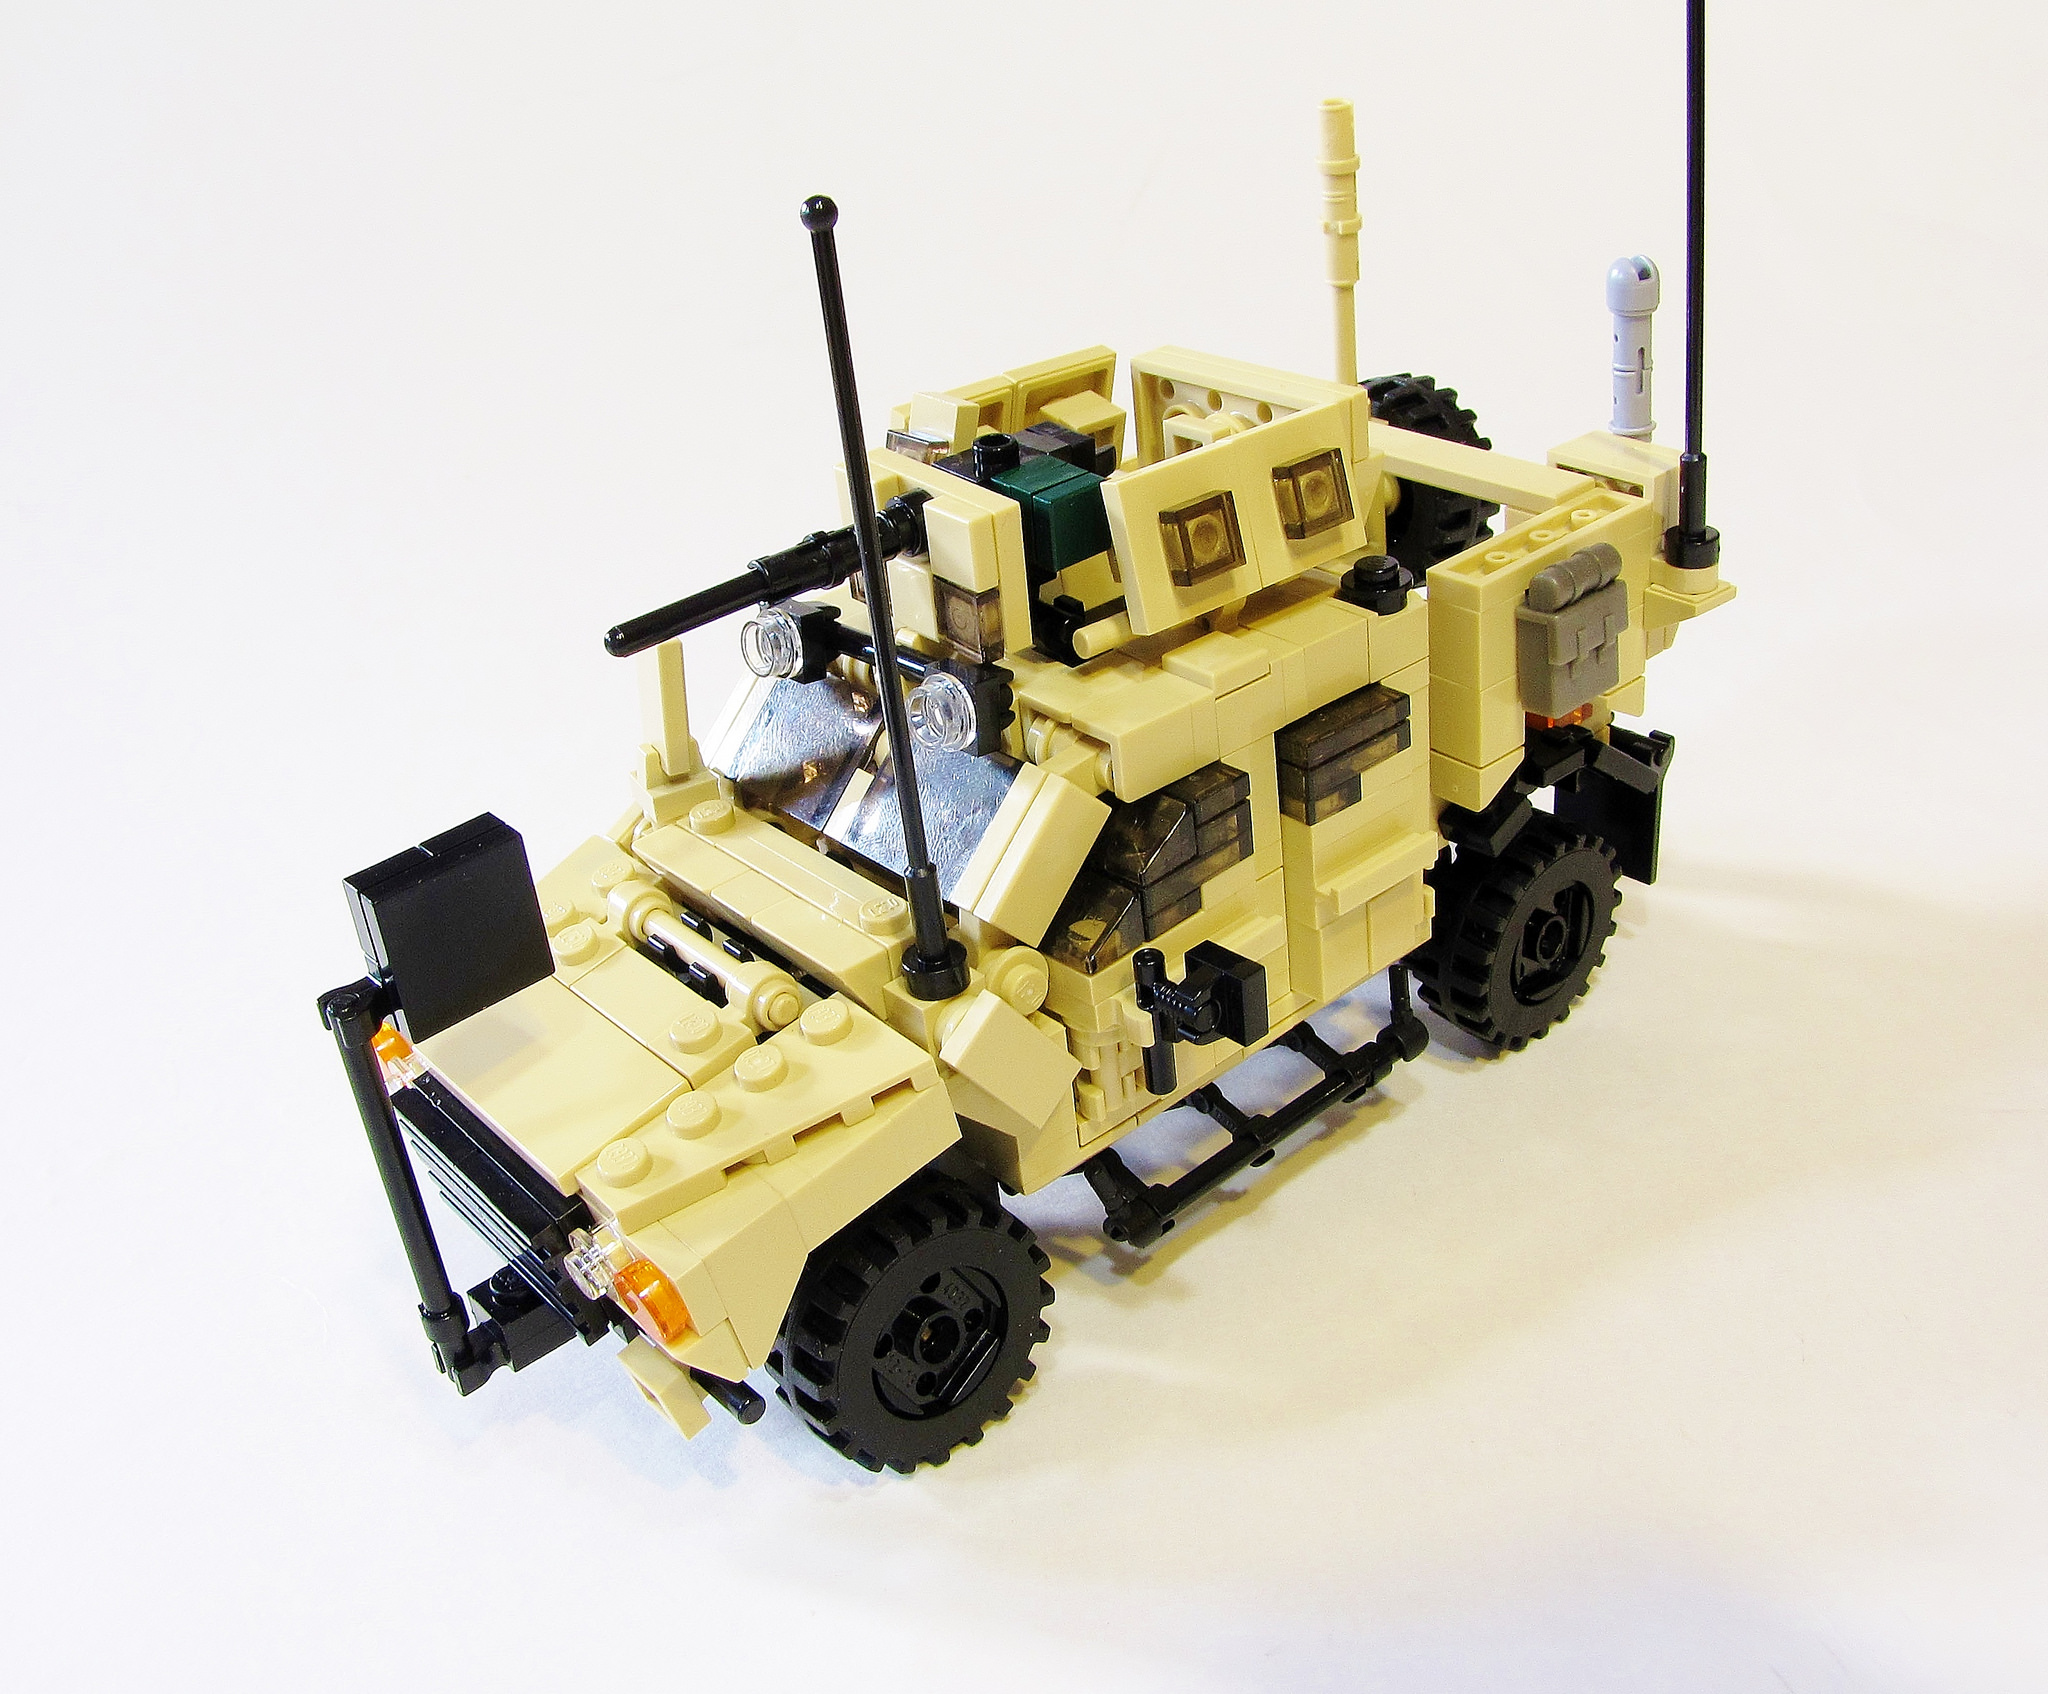 Lego-Oshkosh-M-ATV-1